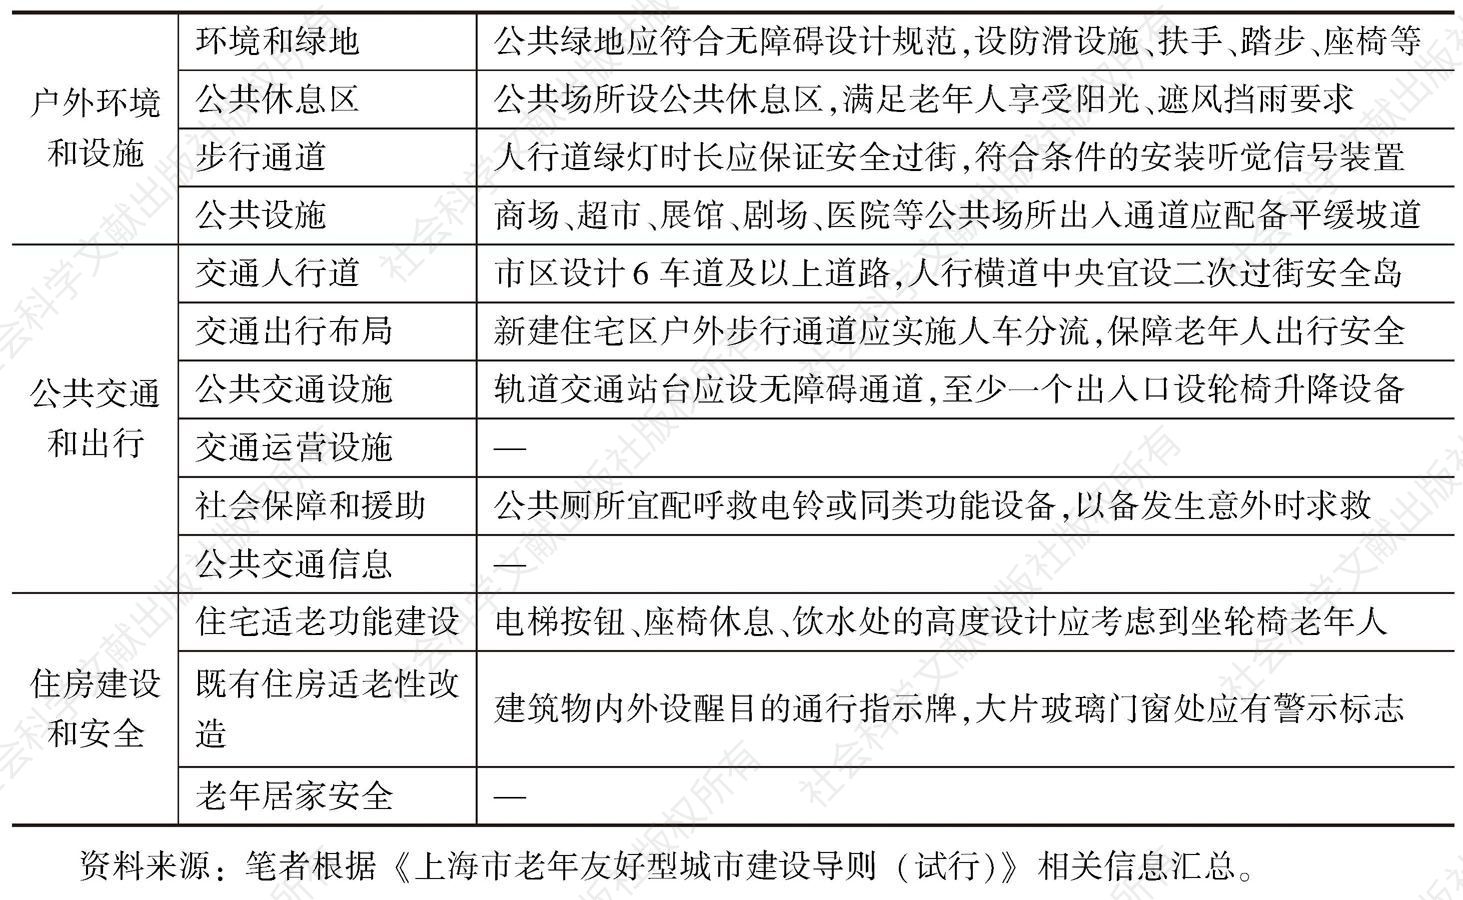 表3 《上海市老年友好型城市建设导则（试行）》——人工和设施环境部分